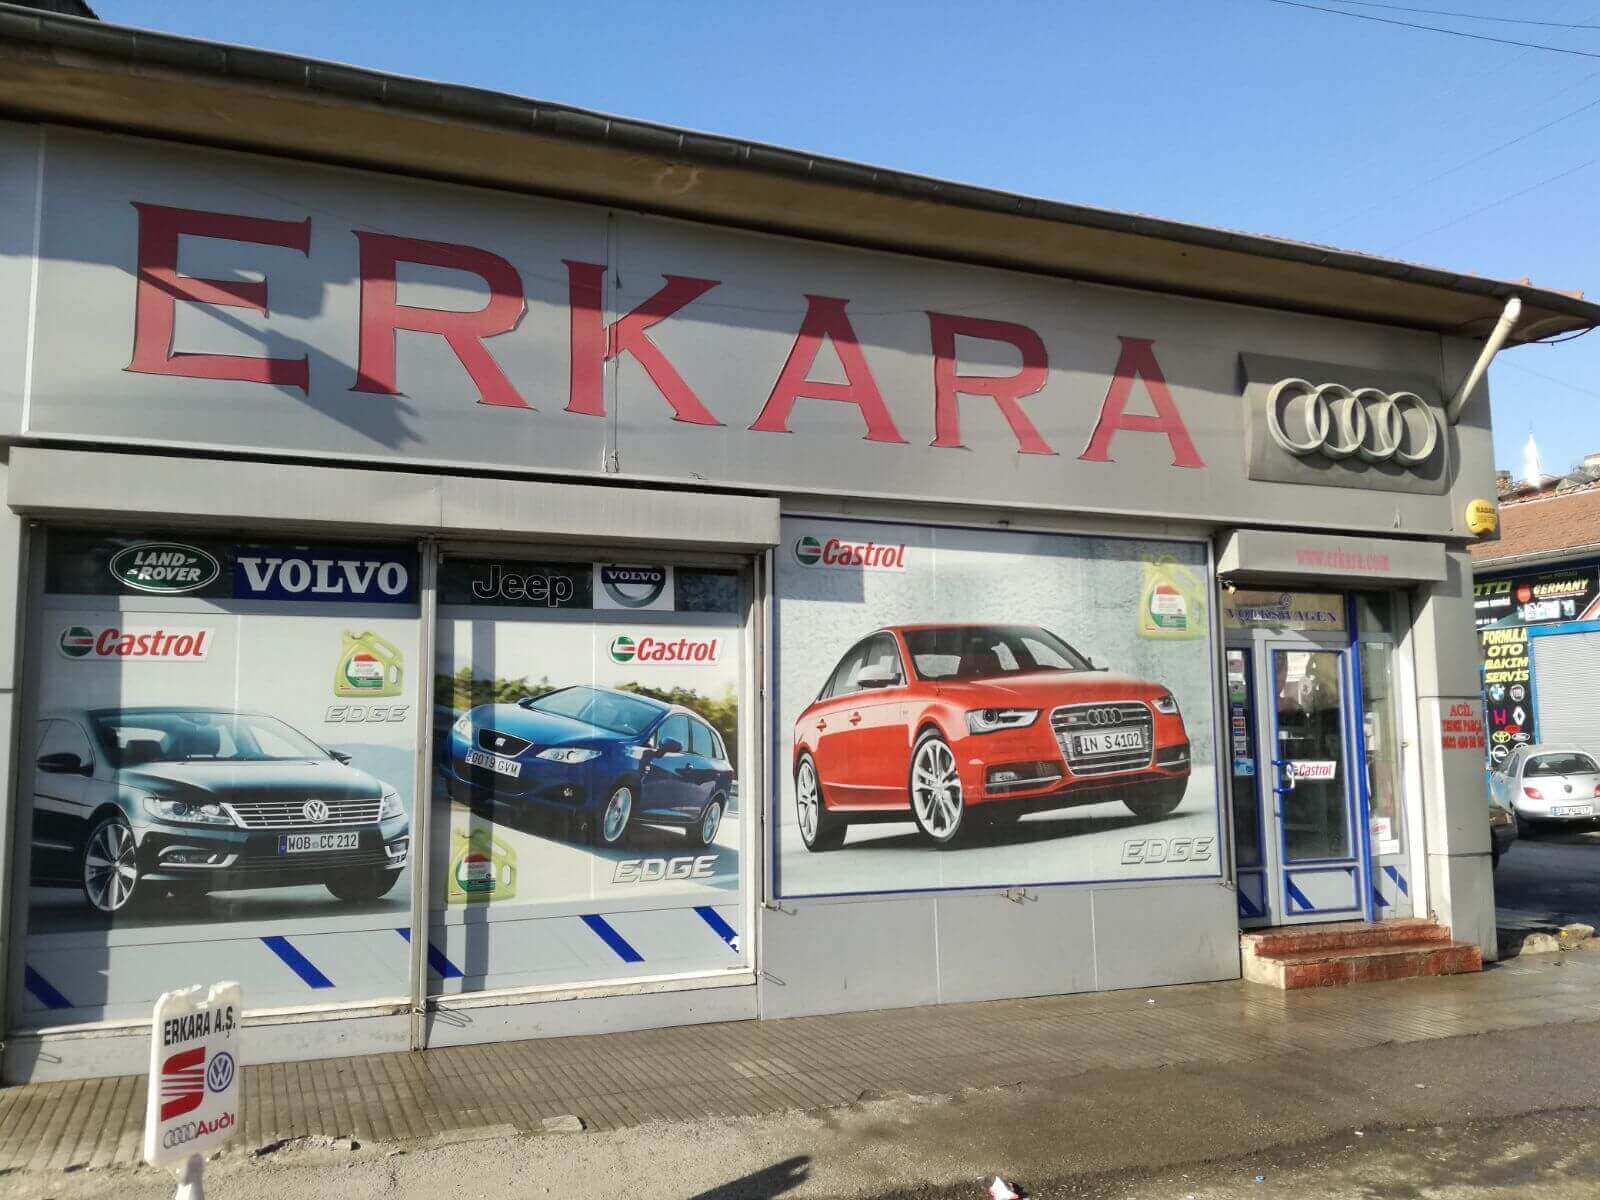 Endüstriyel Ürünler - Eskişehir Oto Yedek Parça - Eskişehir Erkara A.Ş.